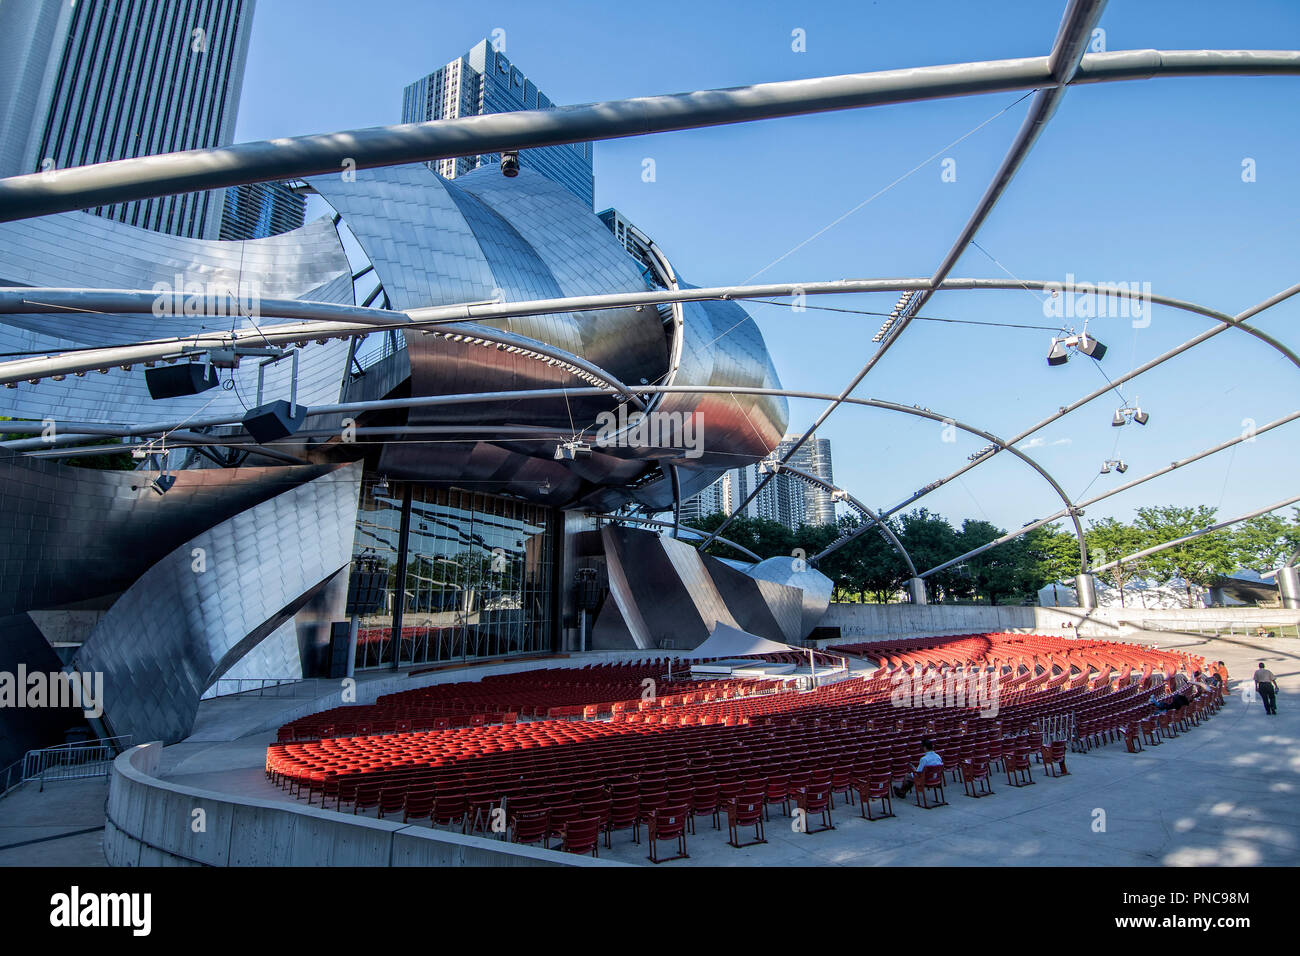 Jay Pritzker Pavilion Konzertmuschel, von dem Architekten Frank O. Gehry in Millennium Park, Chicago, IL. Stockfoto